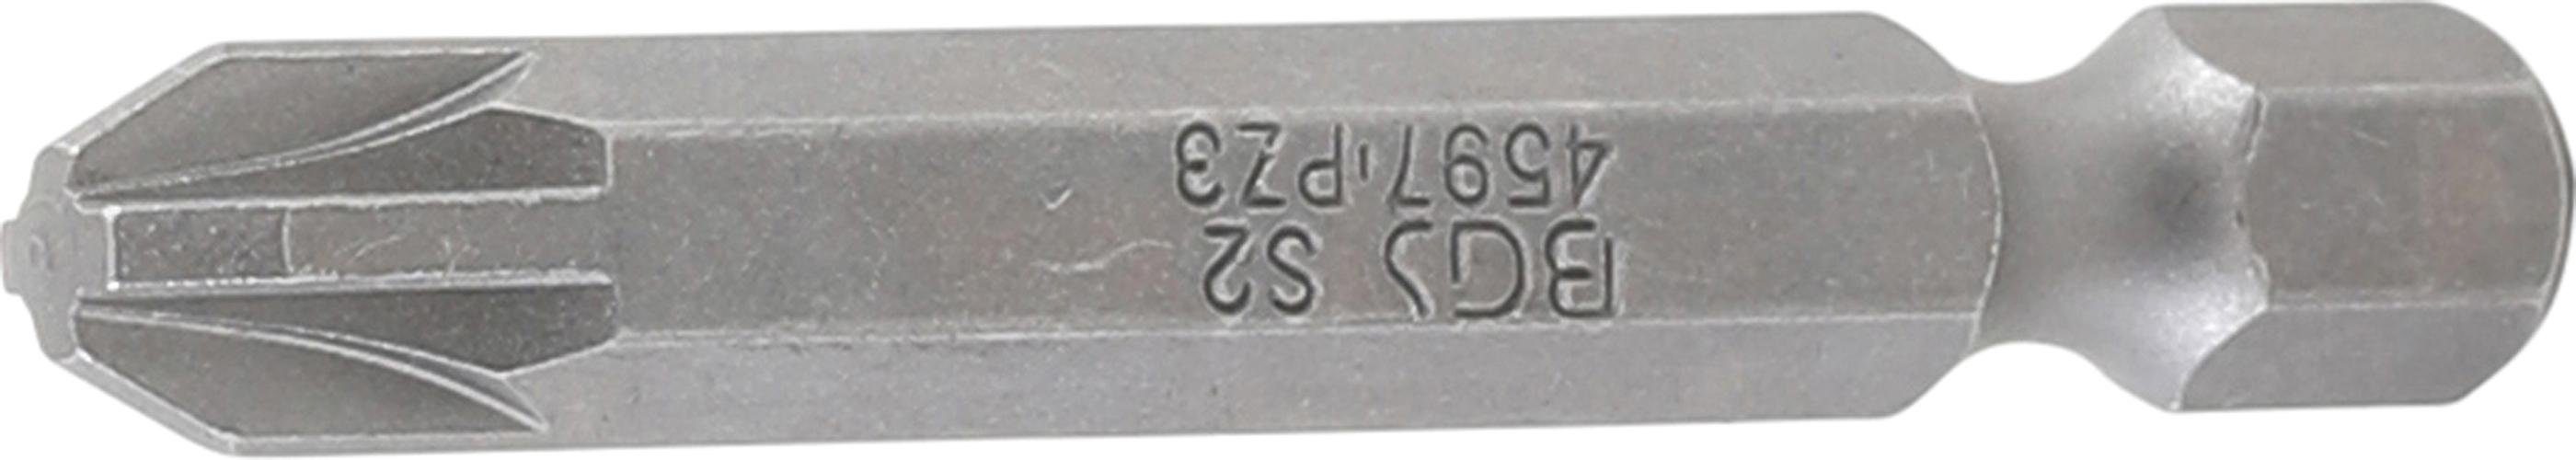 BGS technic Bit-Schraubendreher Bit, Länge 50 mm, Antrieb Außensechskant 6,3 mm (1/4), Kreuzschlitz PZ3